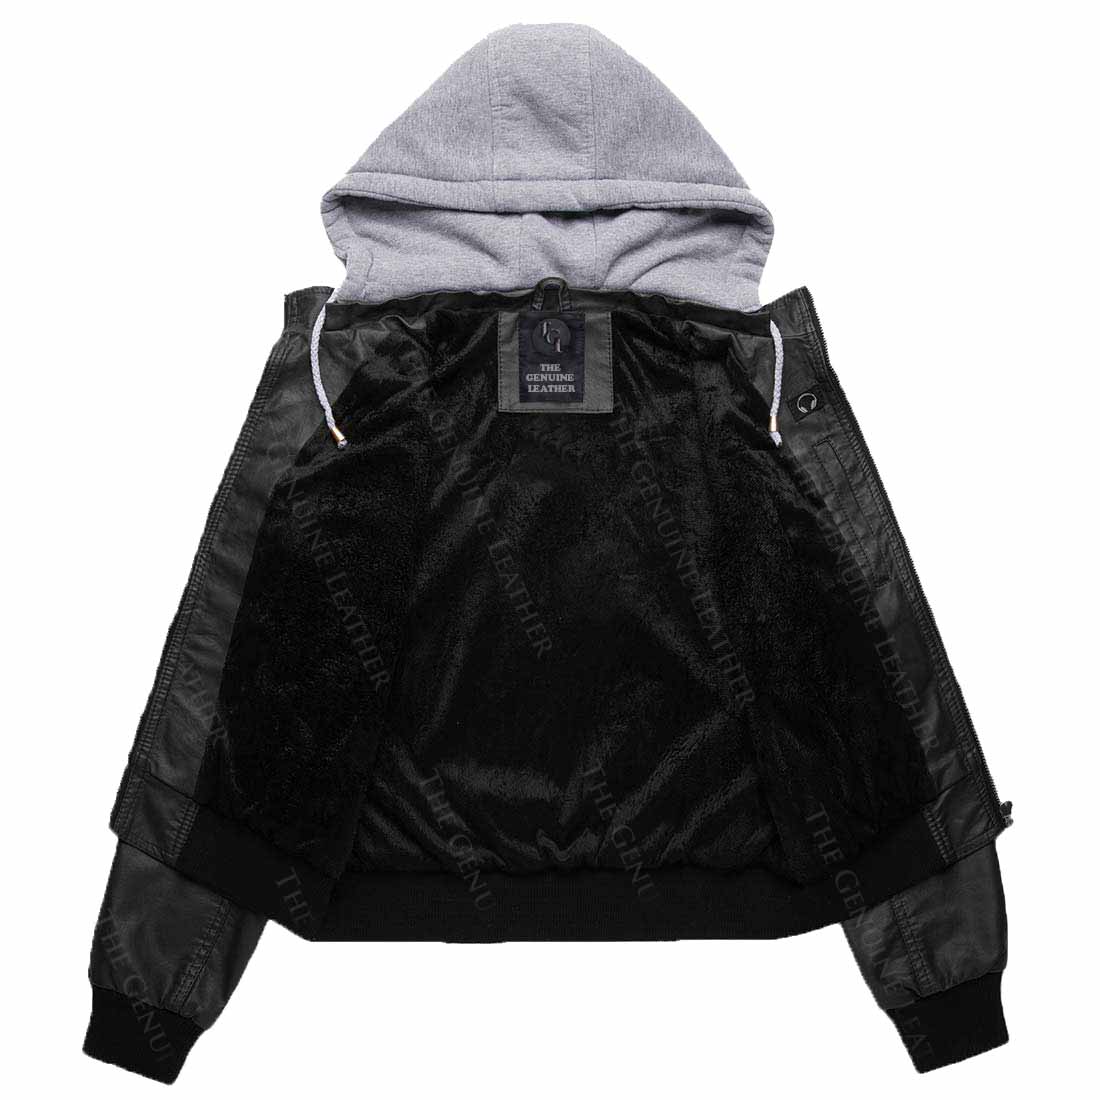 Womens Wnatdo Hooded Leather Jacket